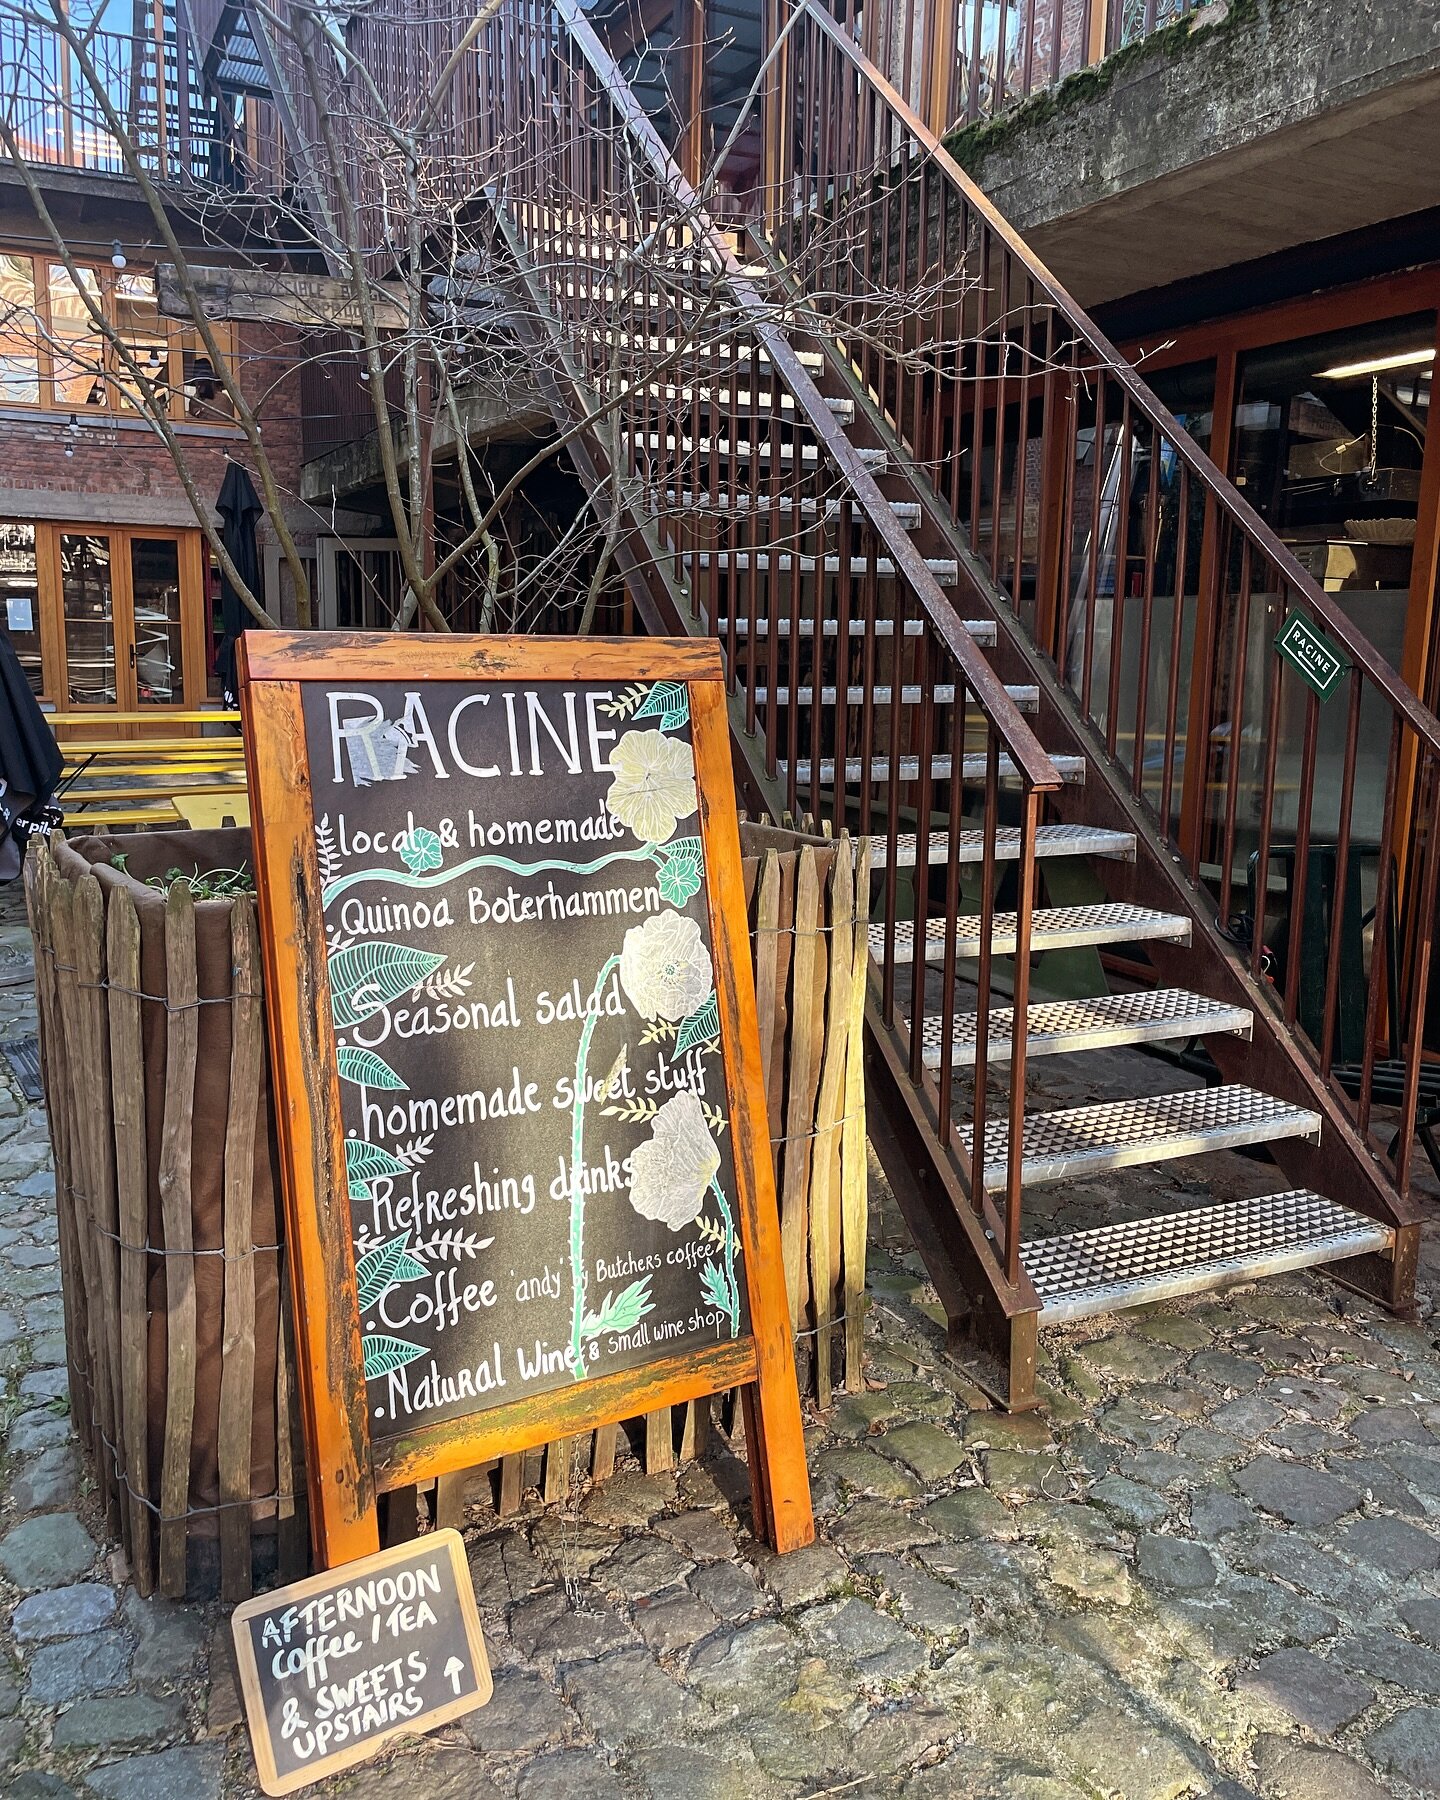 For the good stuff, take the stairs 🔝! Wij zijn het hele weekend open 🌸

#racine #racinepakt #paktantwerpen #antwerpfood #groenkwartier #weekendinantwerpen